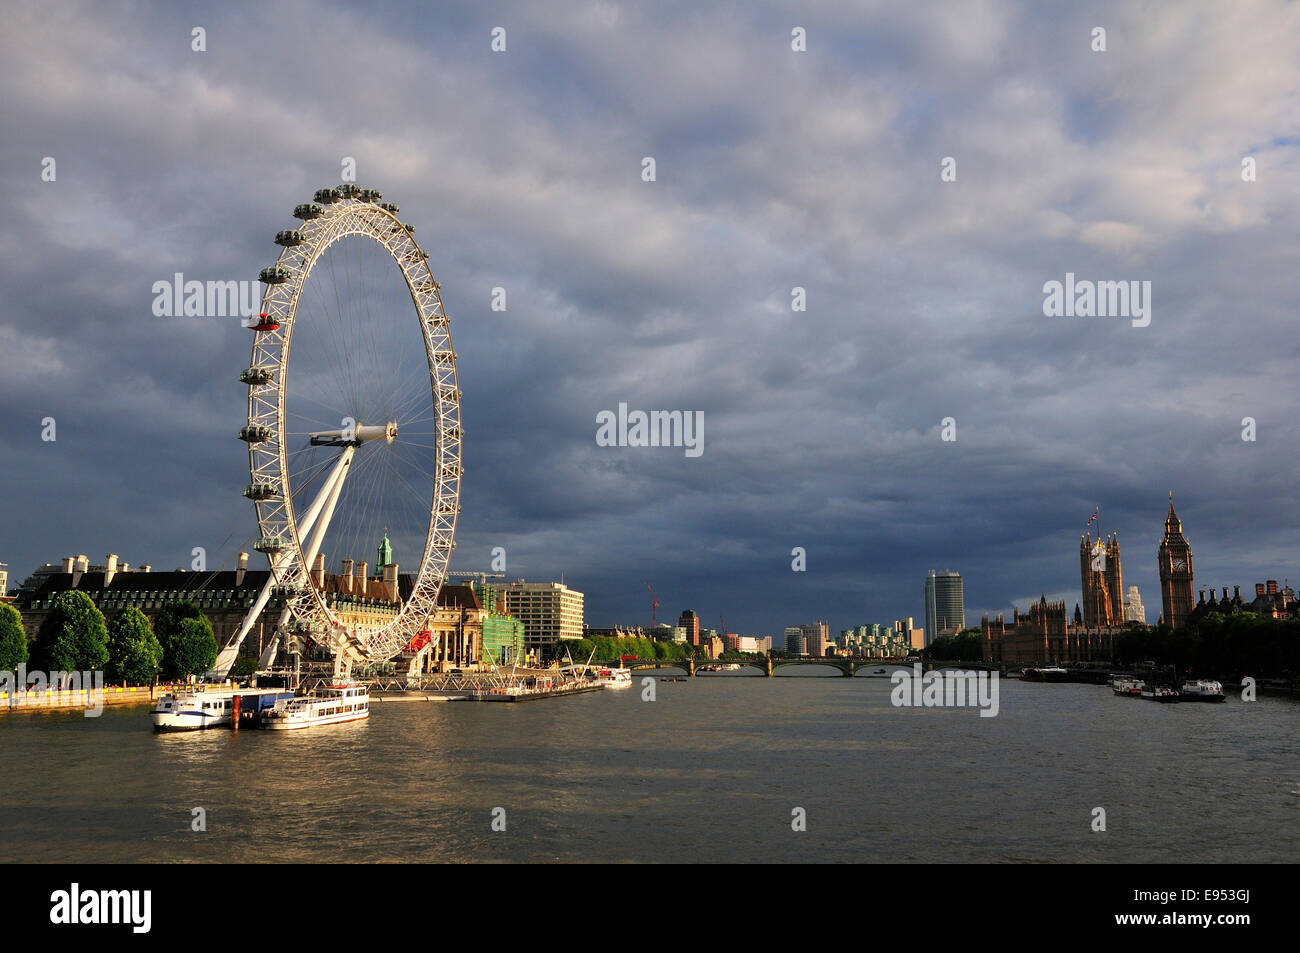 Vue depuis le Hungerford Bridge sur la Tamise et le London Eye, Londres, Angleterre, Royaume-Uni Banque D'Images